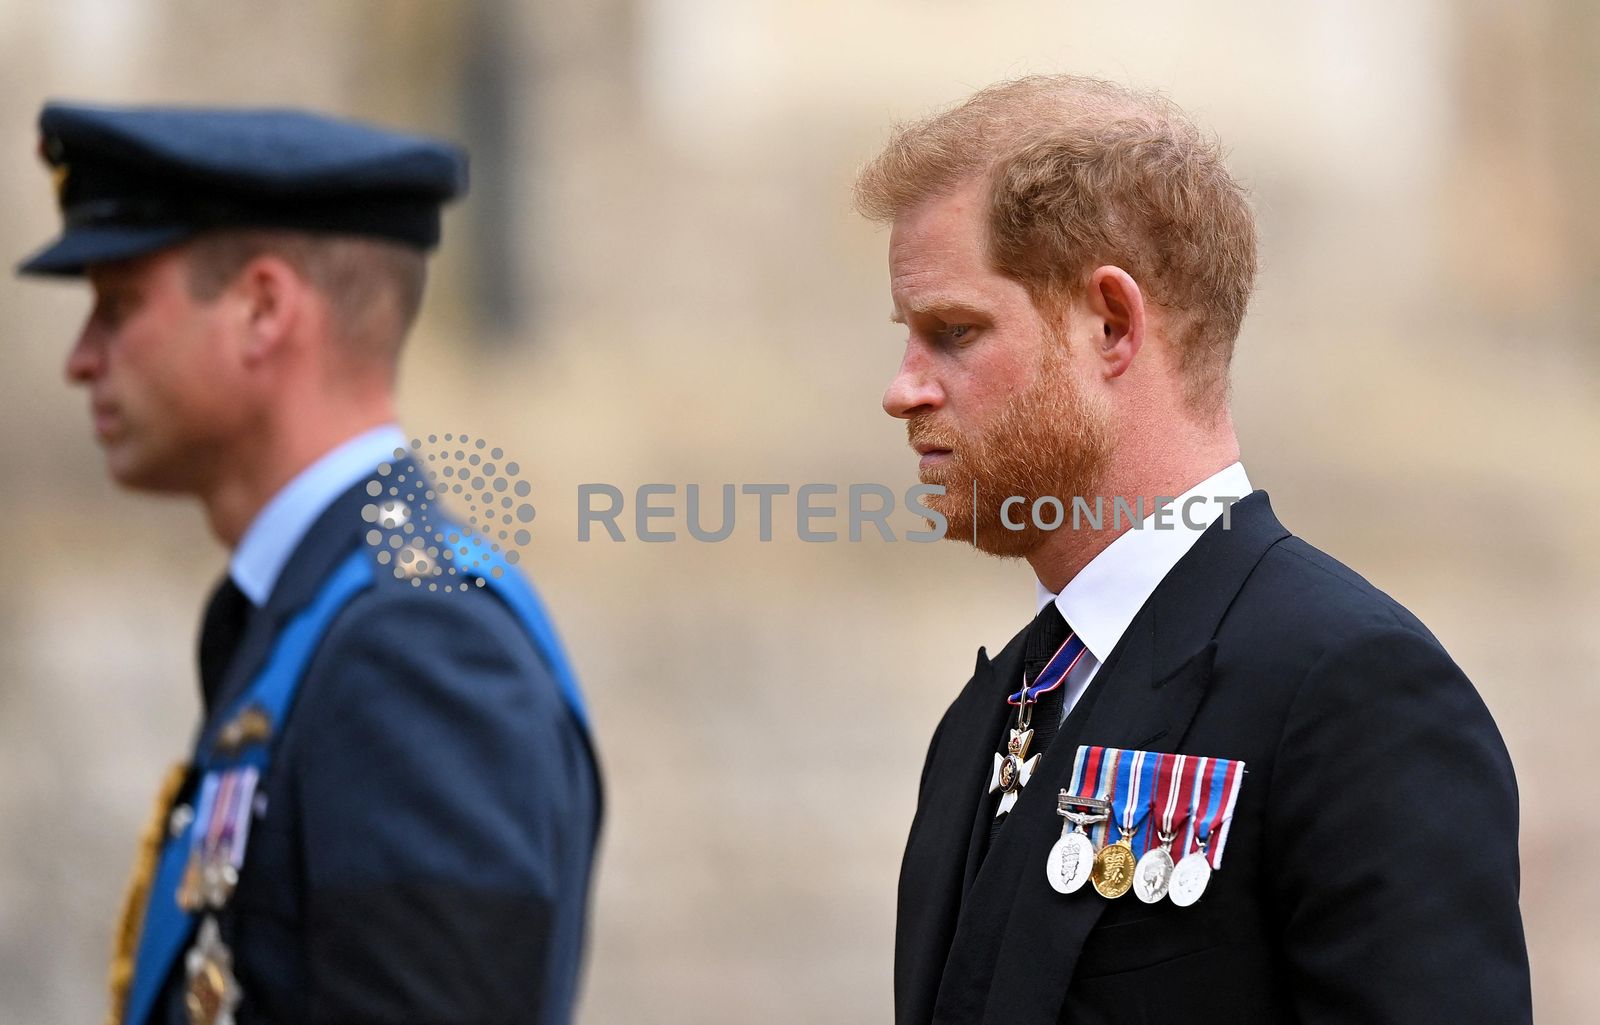 ولي العهد البريطاني الأمير وليام وشقيقه الأمير هاري دوق ساسكس أثناء مشاركتهما في مراسم جنازة ملكة بريطانيا إليزابيث الثانية بلندن. 19 سبتمبر 2022 - via REUTERS